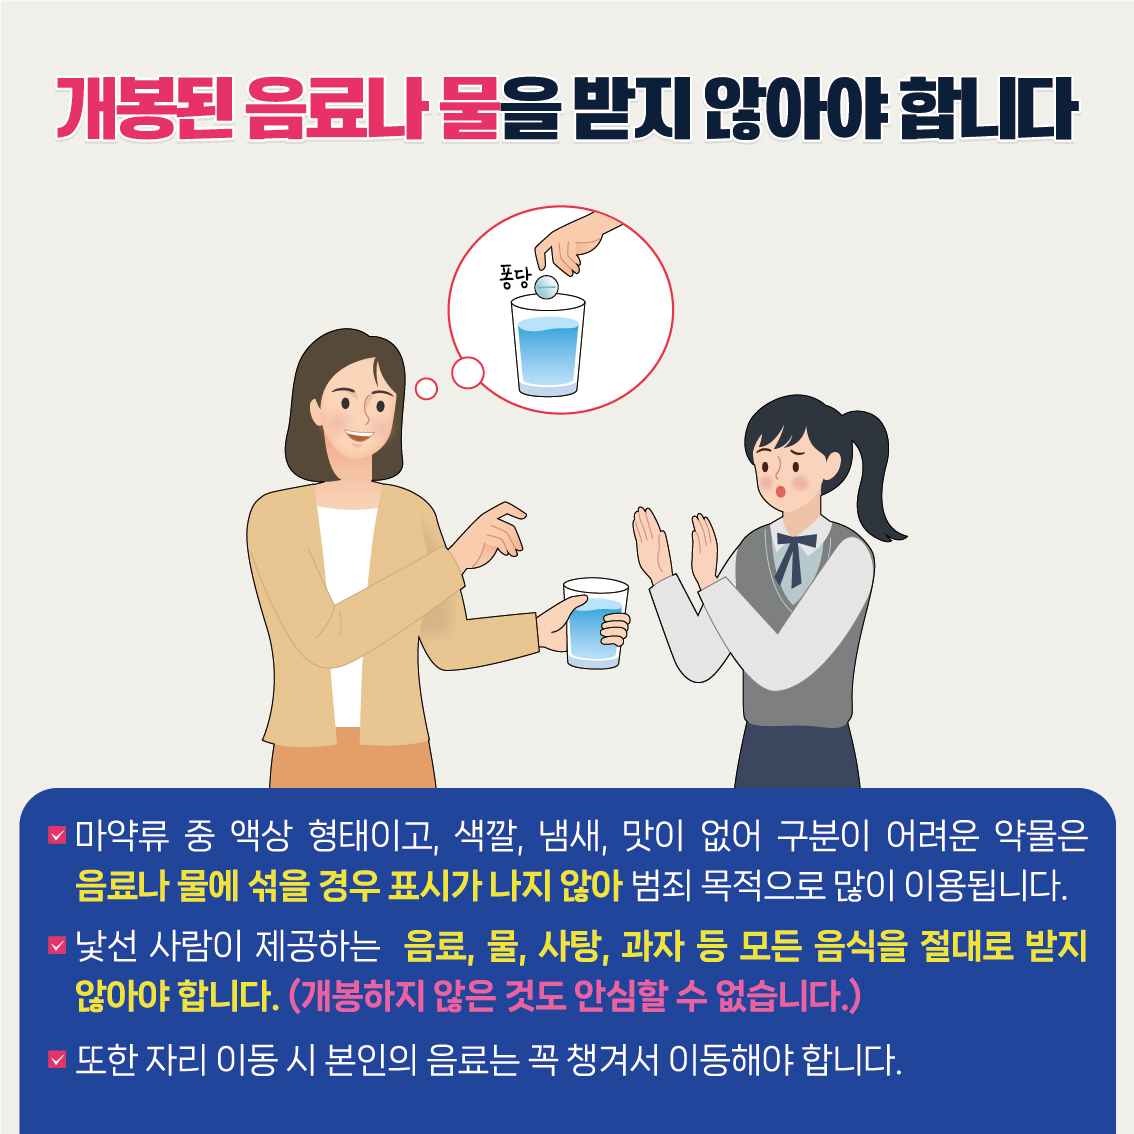 12월1주_마약류 예방 카드뉴스-4호1 (4)